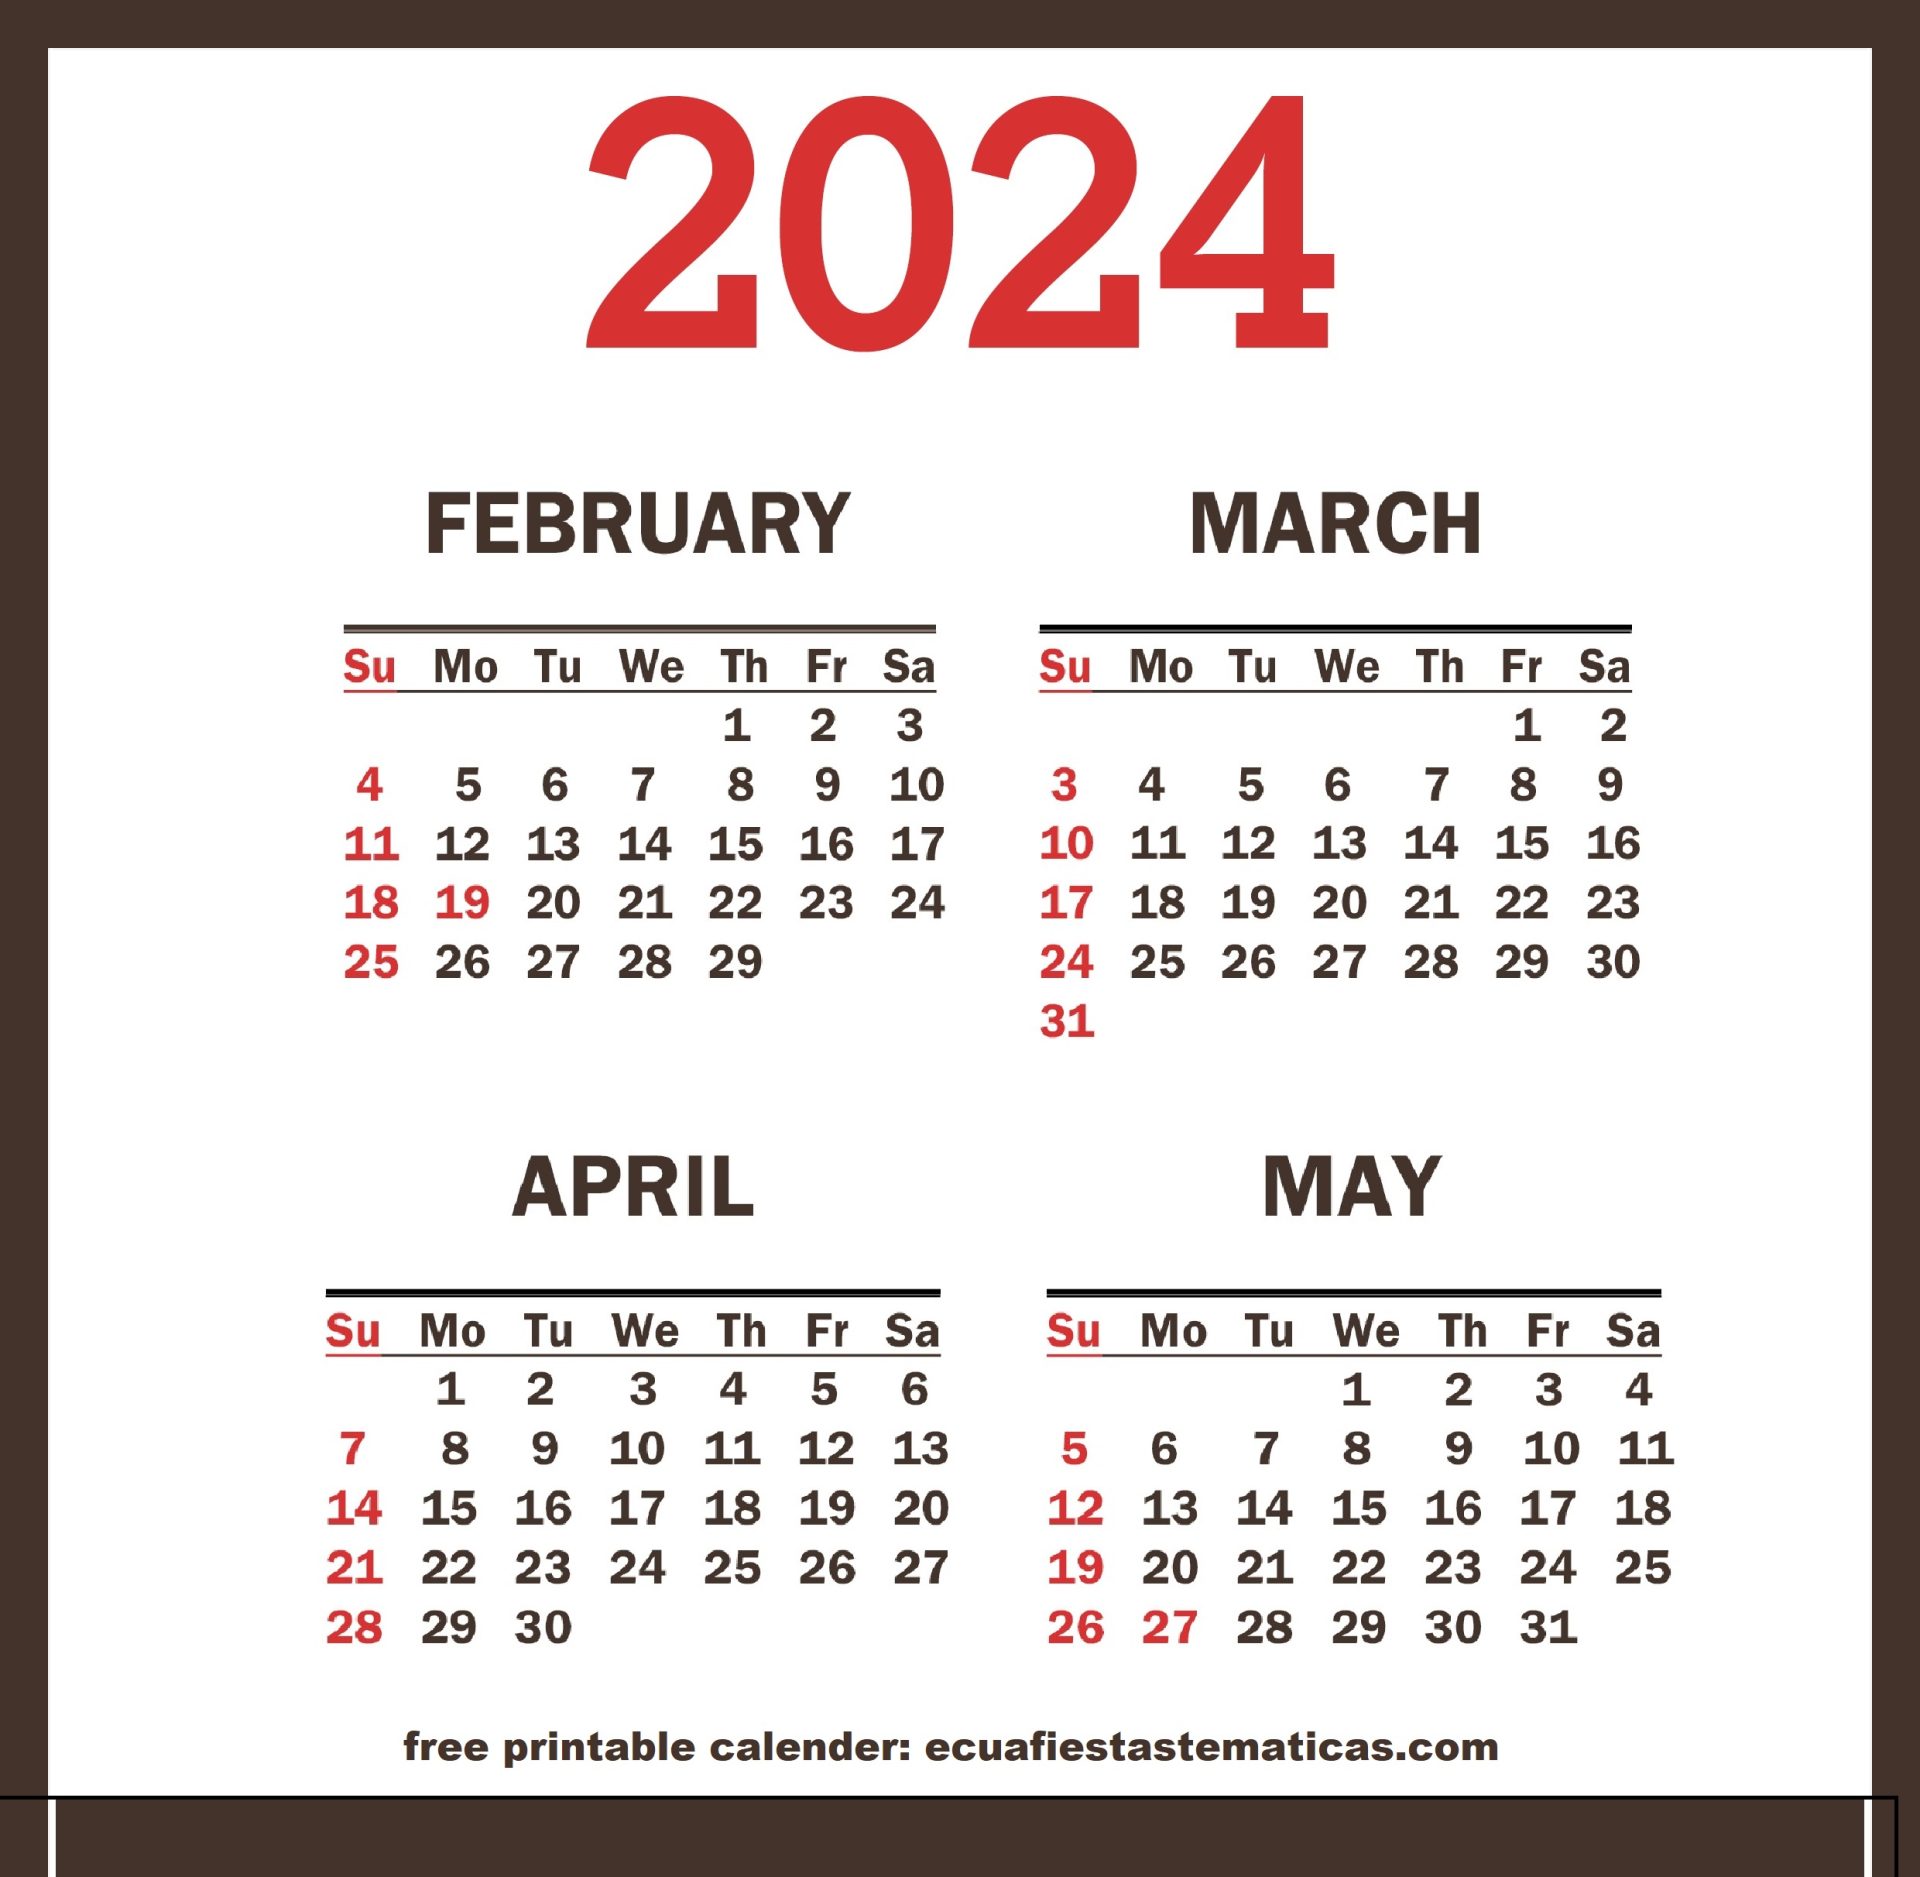 Four month 2024 calendar